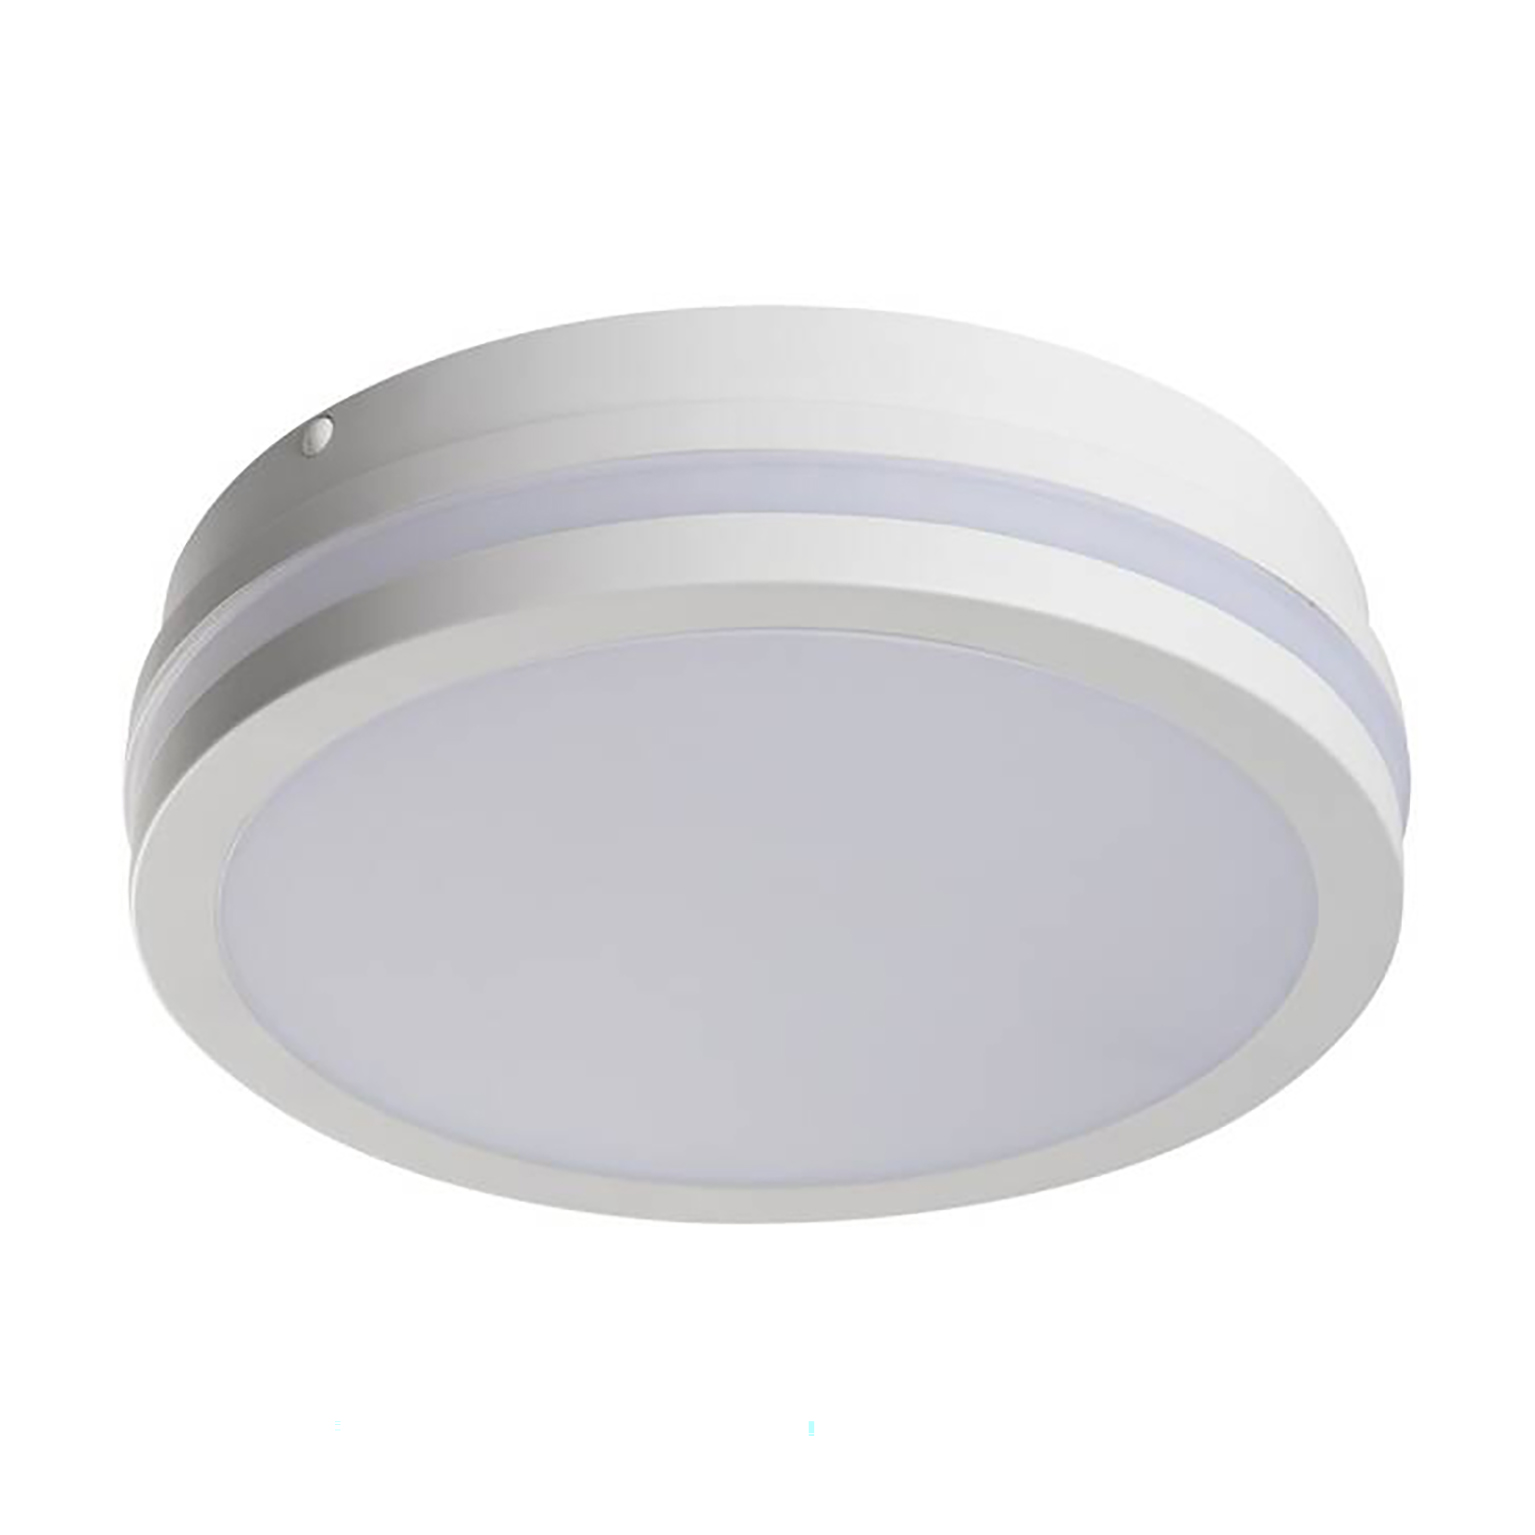 Ceiling light Kanlux BENO - Ø:26cm - White